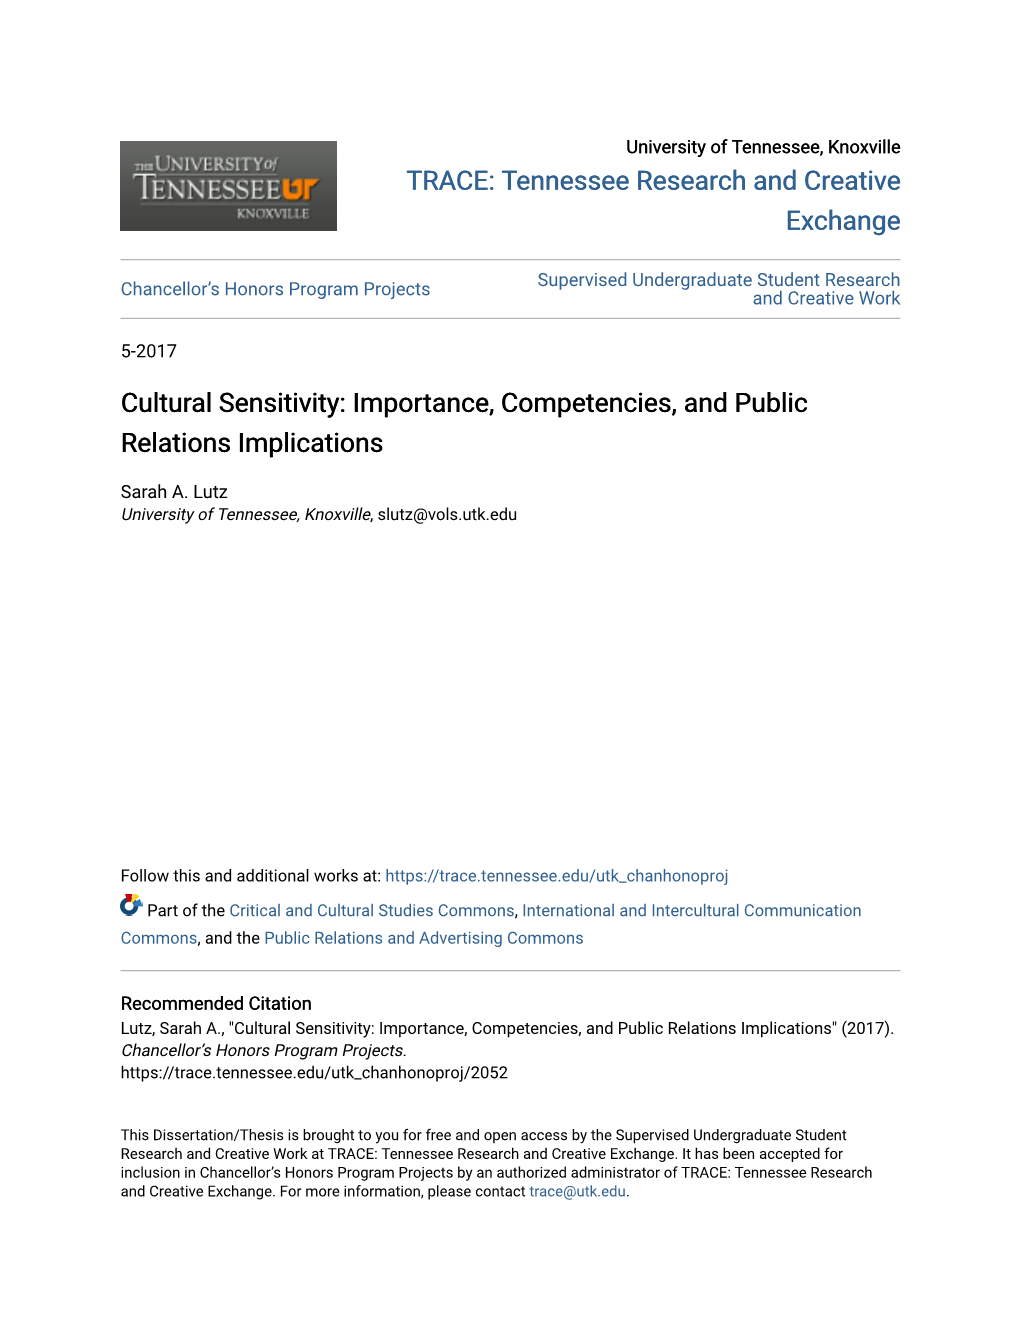 Cultural Sensitivity: Importance, Competencies, and Public Relations Implications